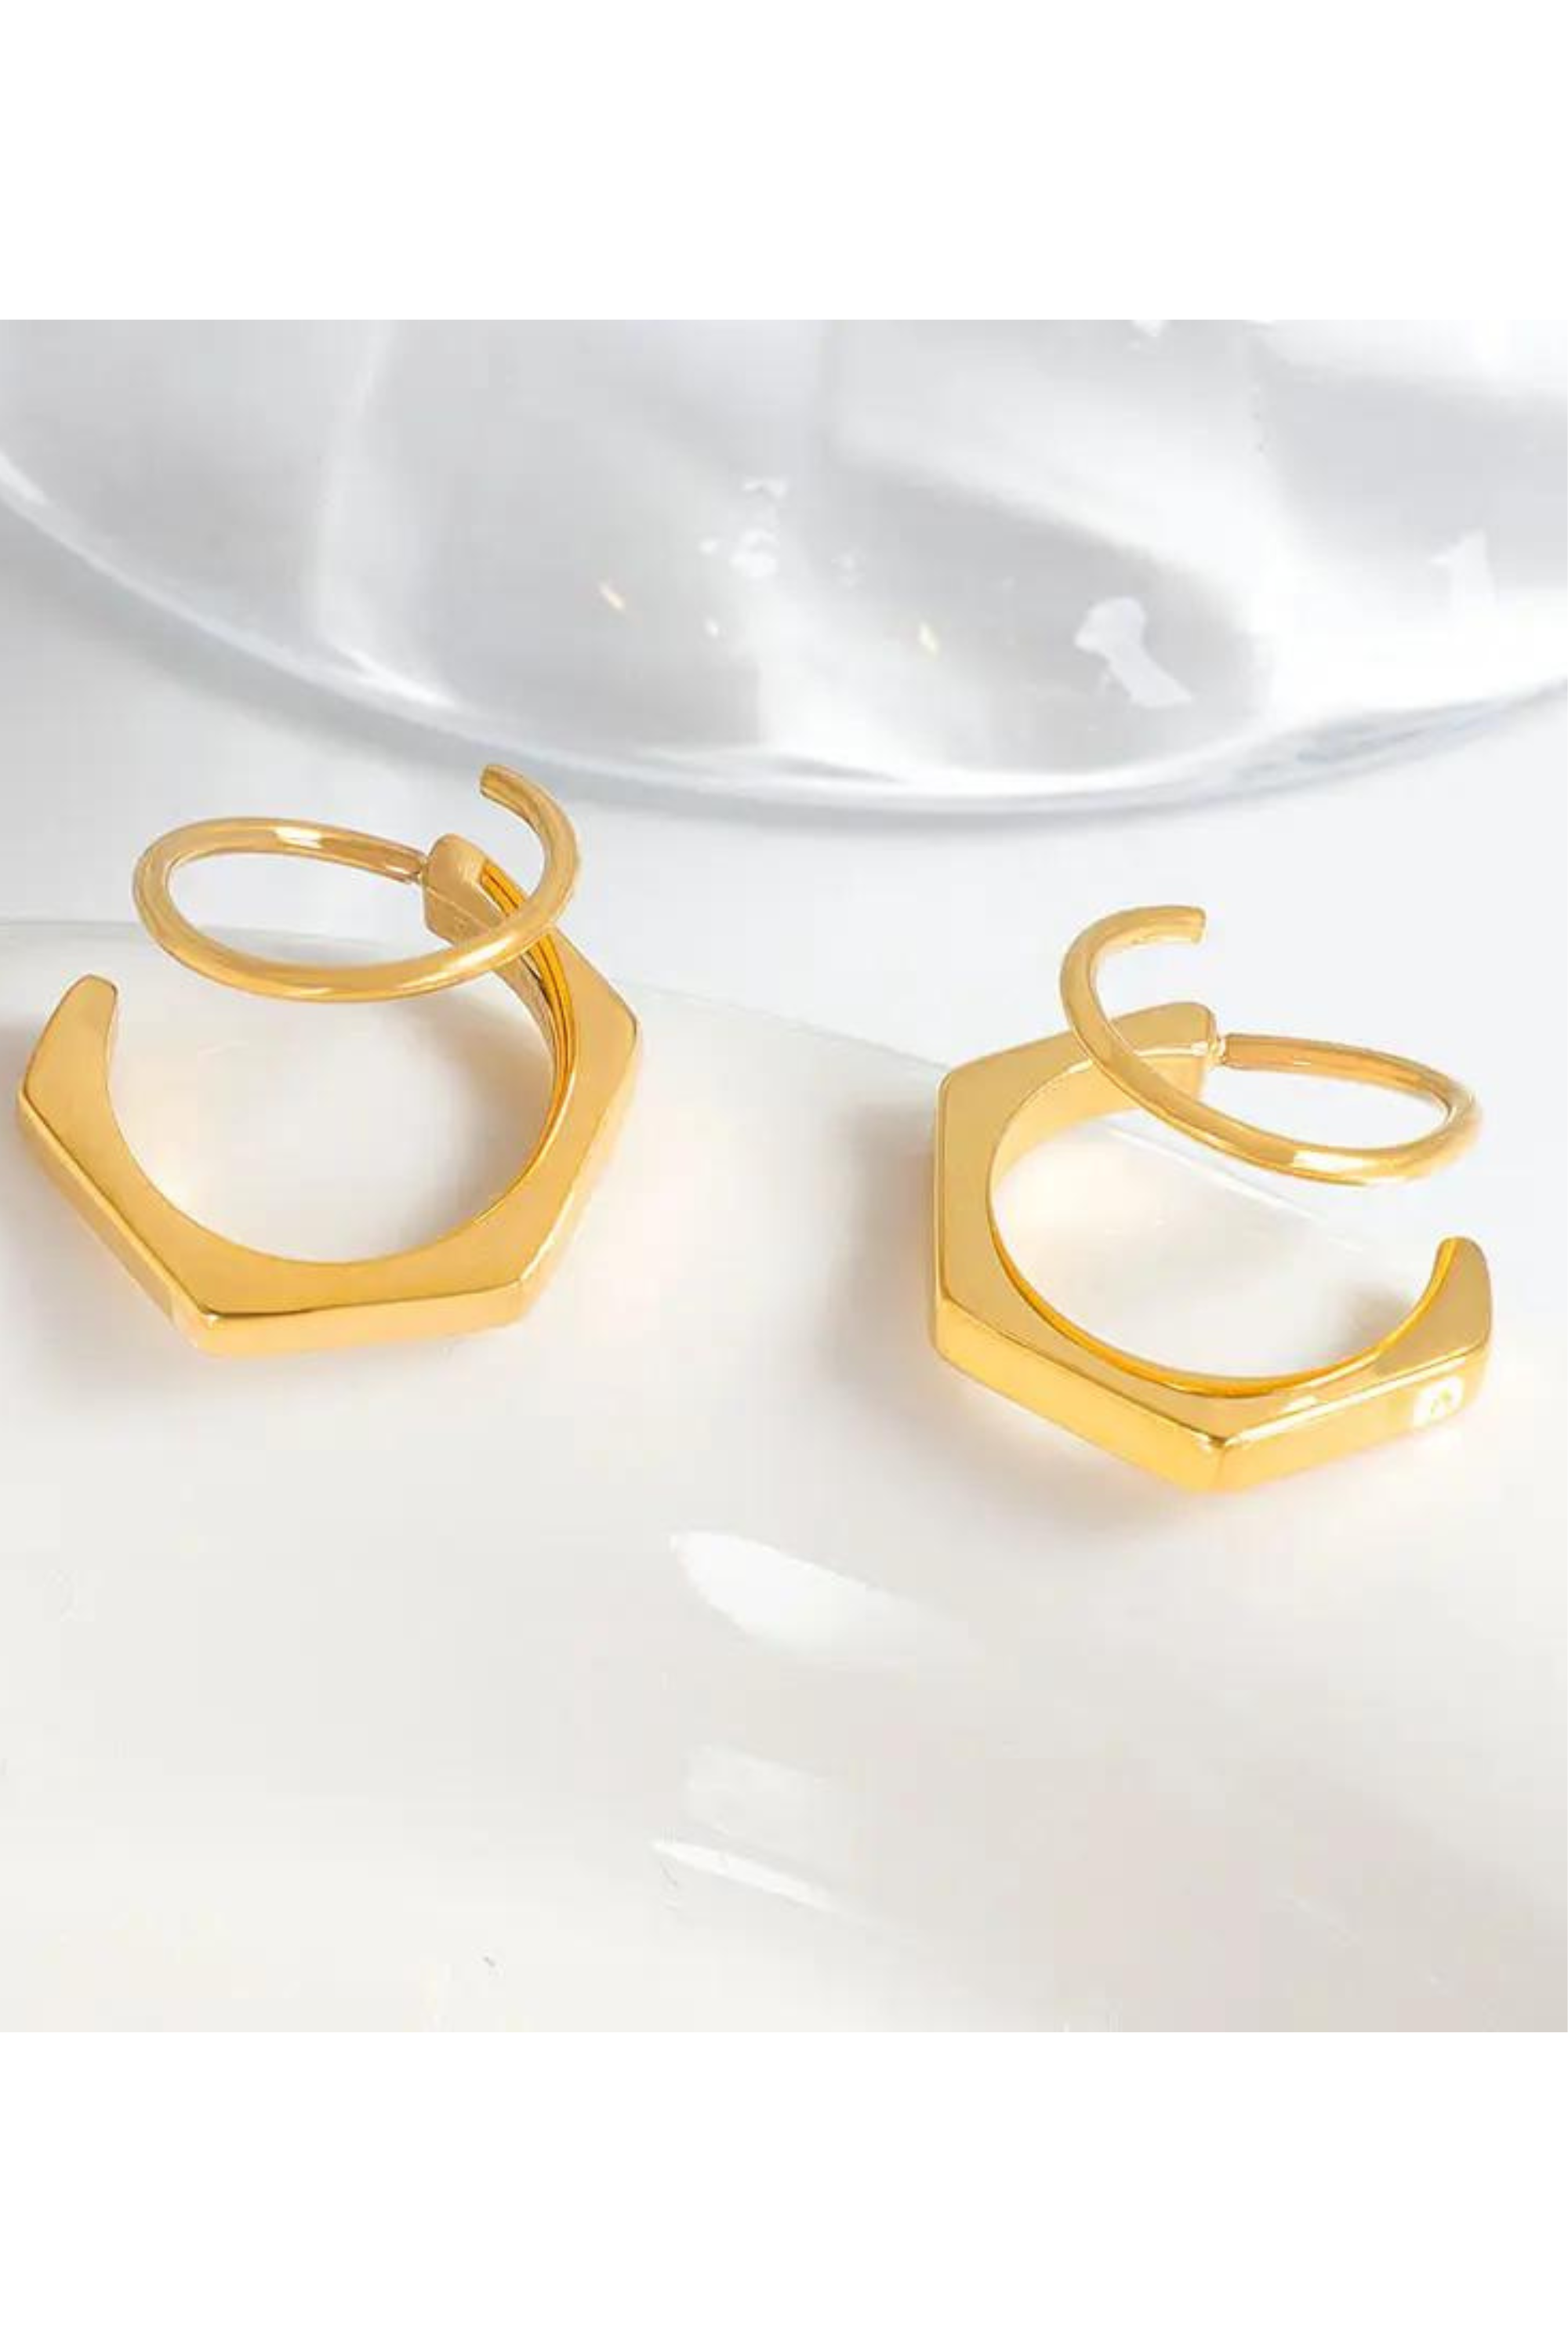 Gold Hexagon - Double Twist Earrings